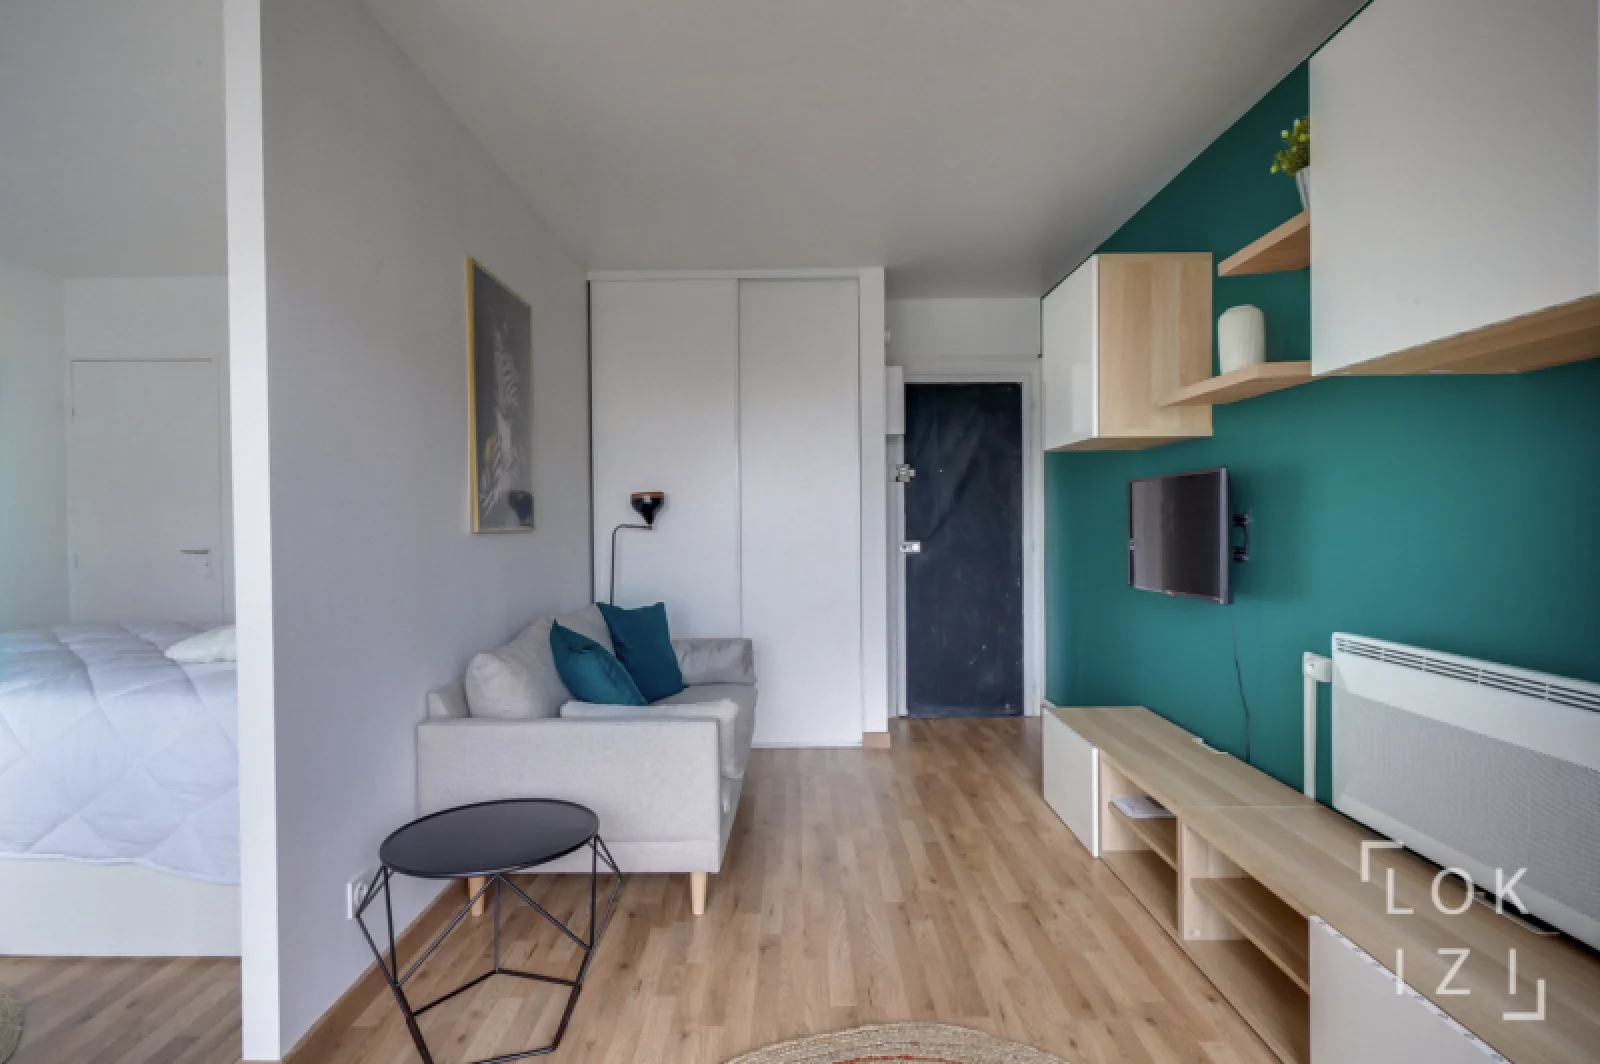 Location appartement T1bis meublé 32m² (Bordeaux - Saint Jean)